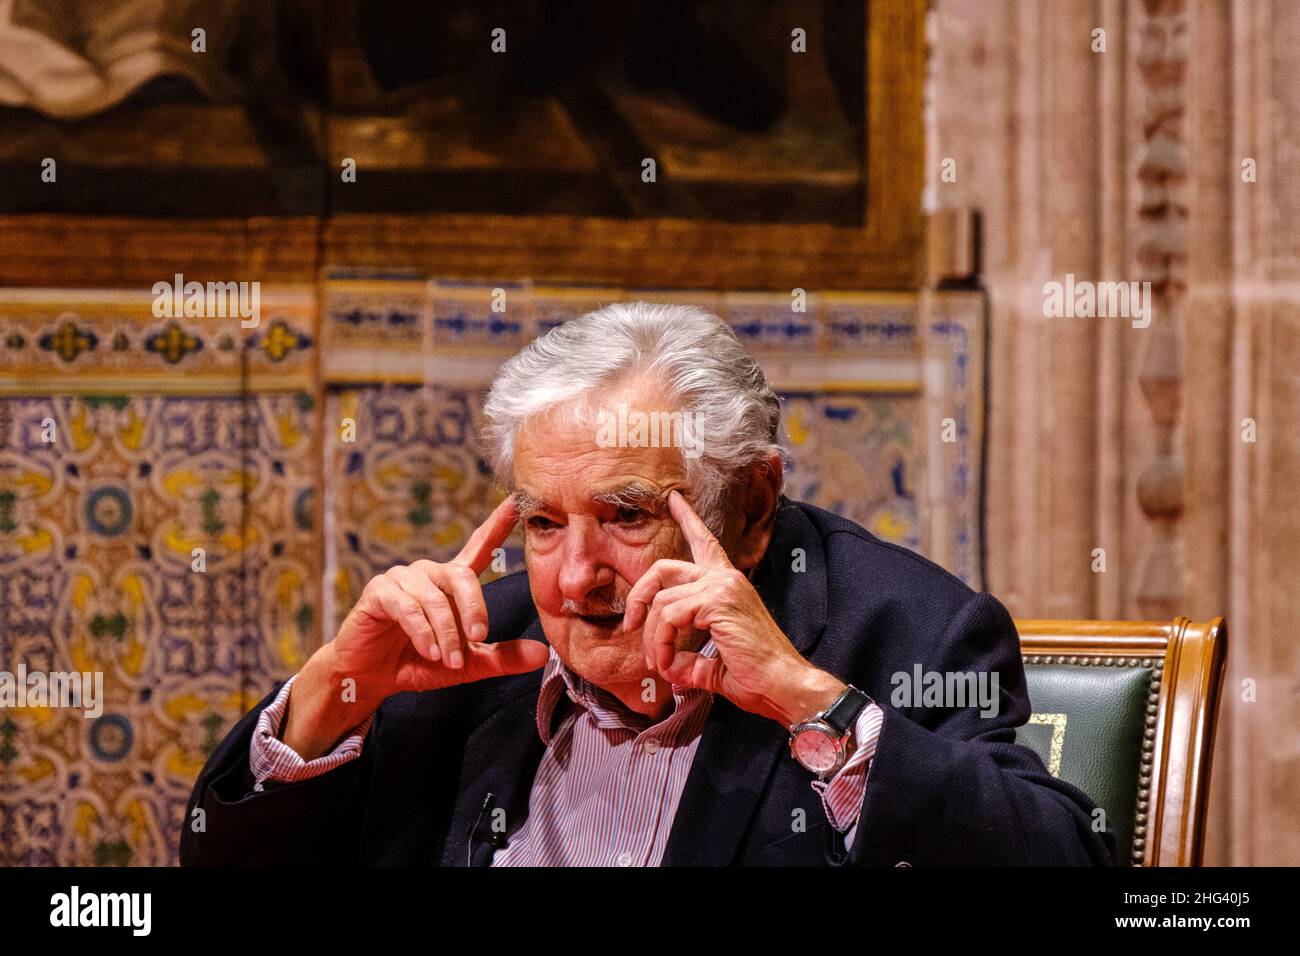 Valencia, Spanien; 4th. Februar 2020: Der ehemalige Präsident von Uruguay, José Mujica, wird während seines Besuchs in den Palau de la Generalitat Valenciana eingeladen Stockfoto